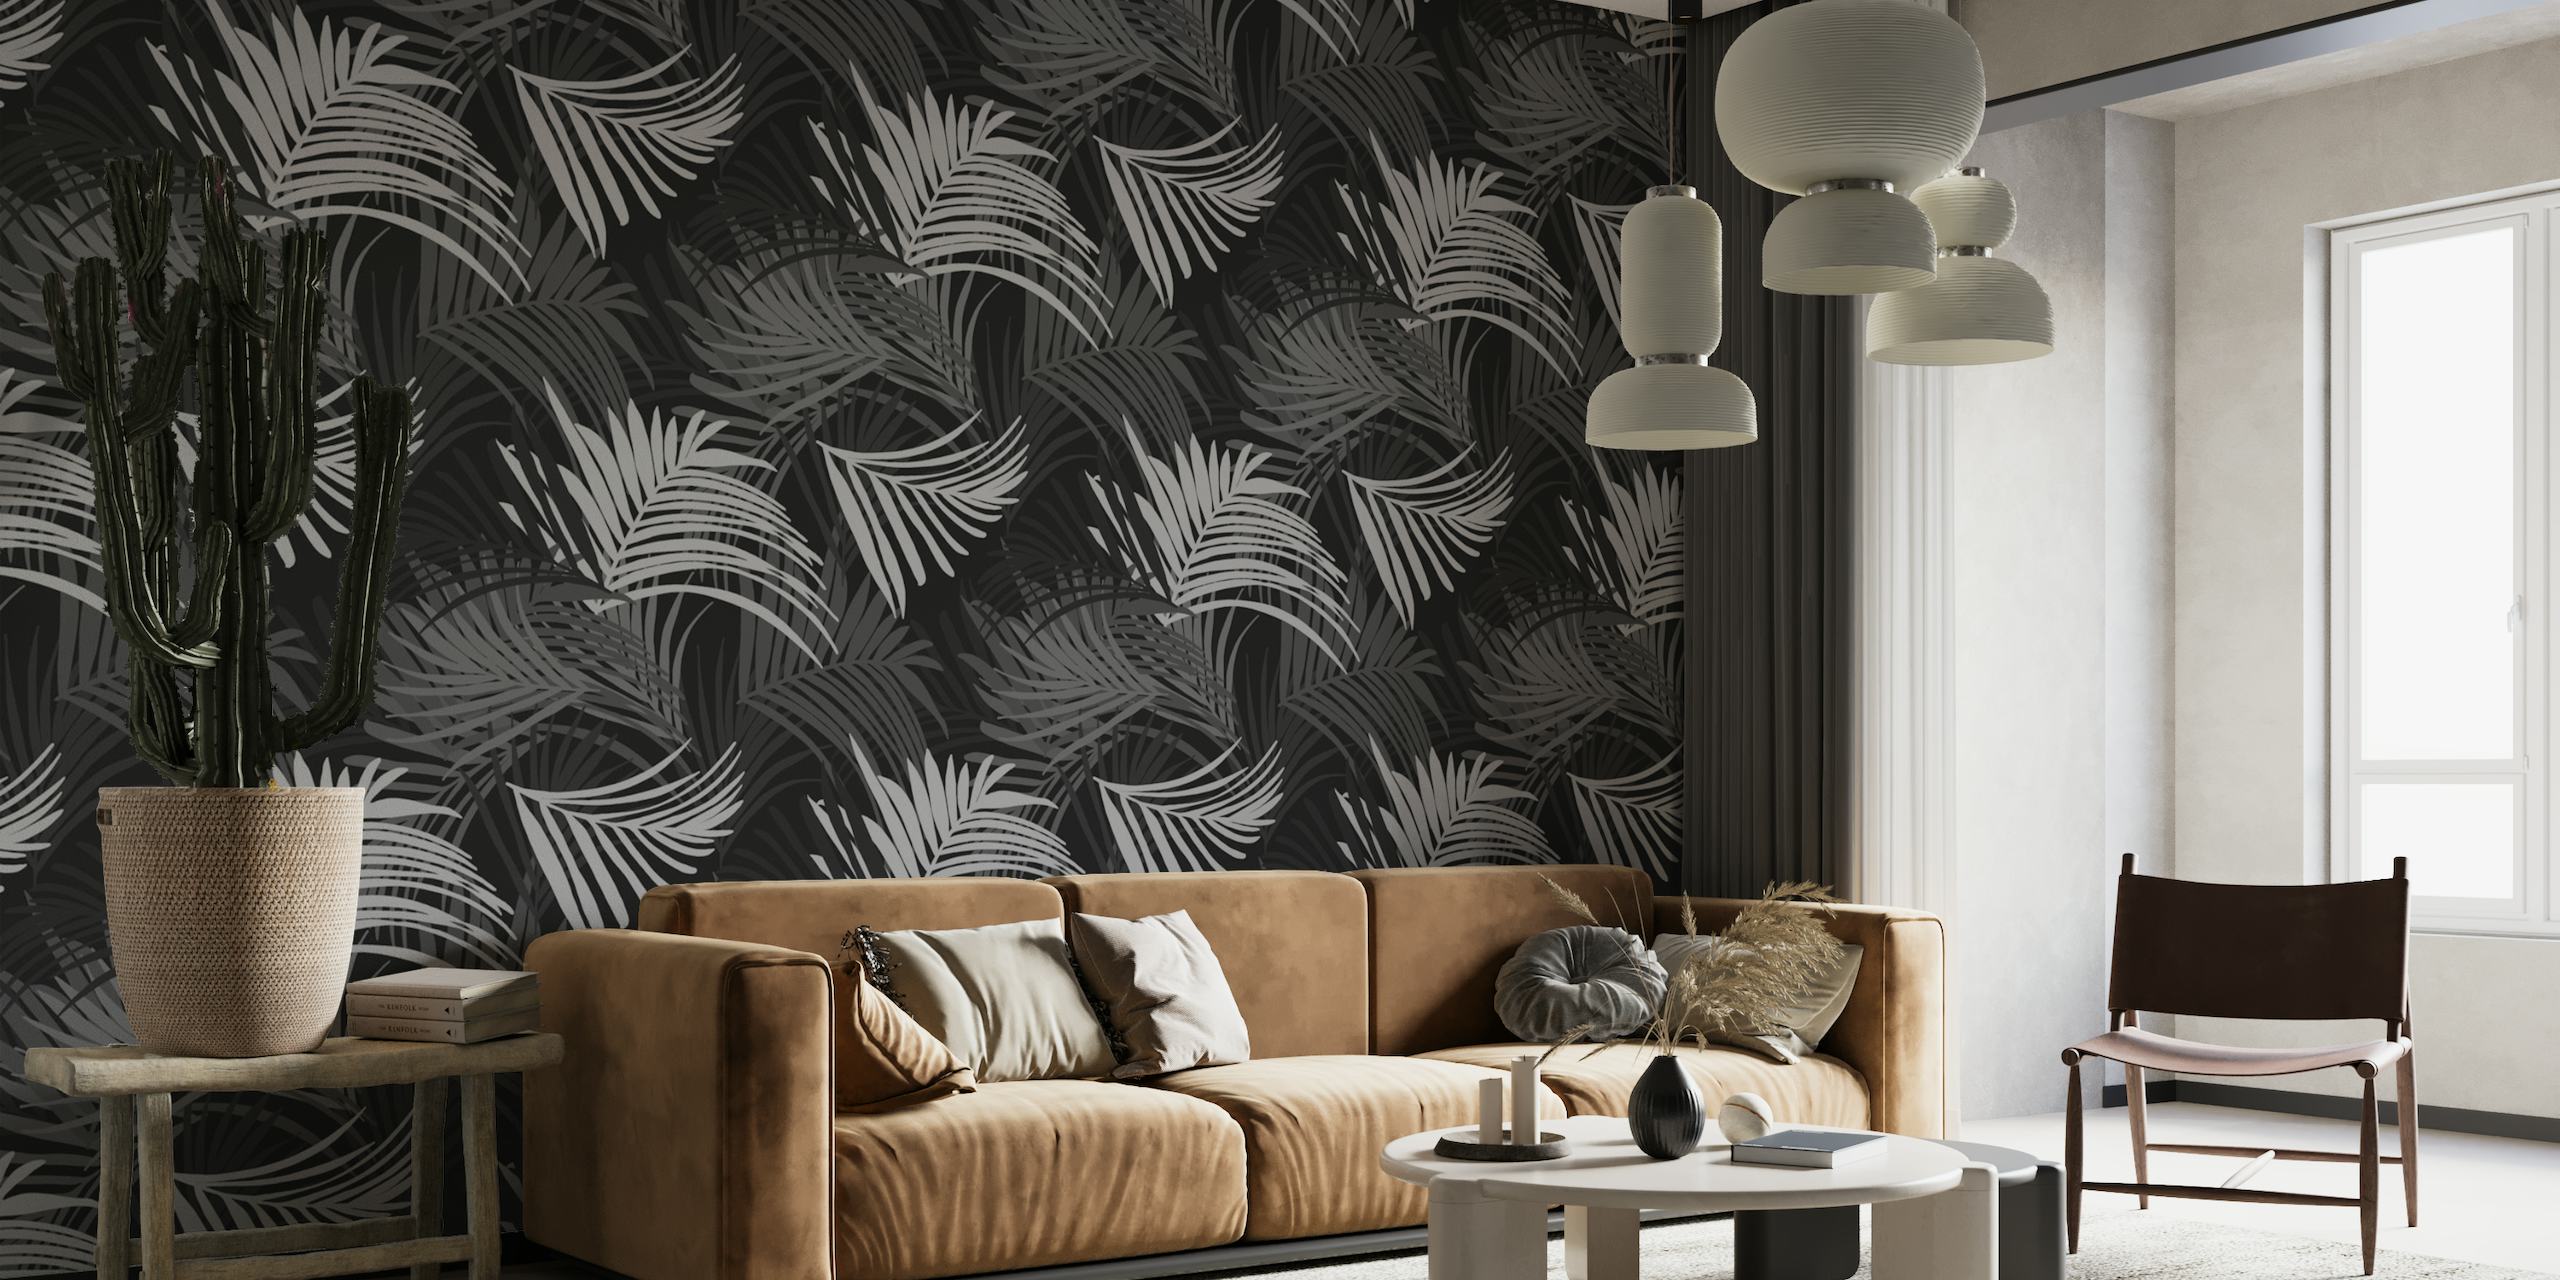 Fotomural vinílico de parede com padrão de folha de palmeira tropical em preto e branco, perfeito para criar um tema de selva serena.